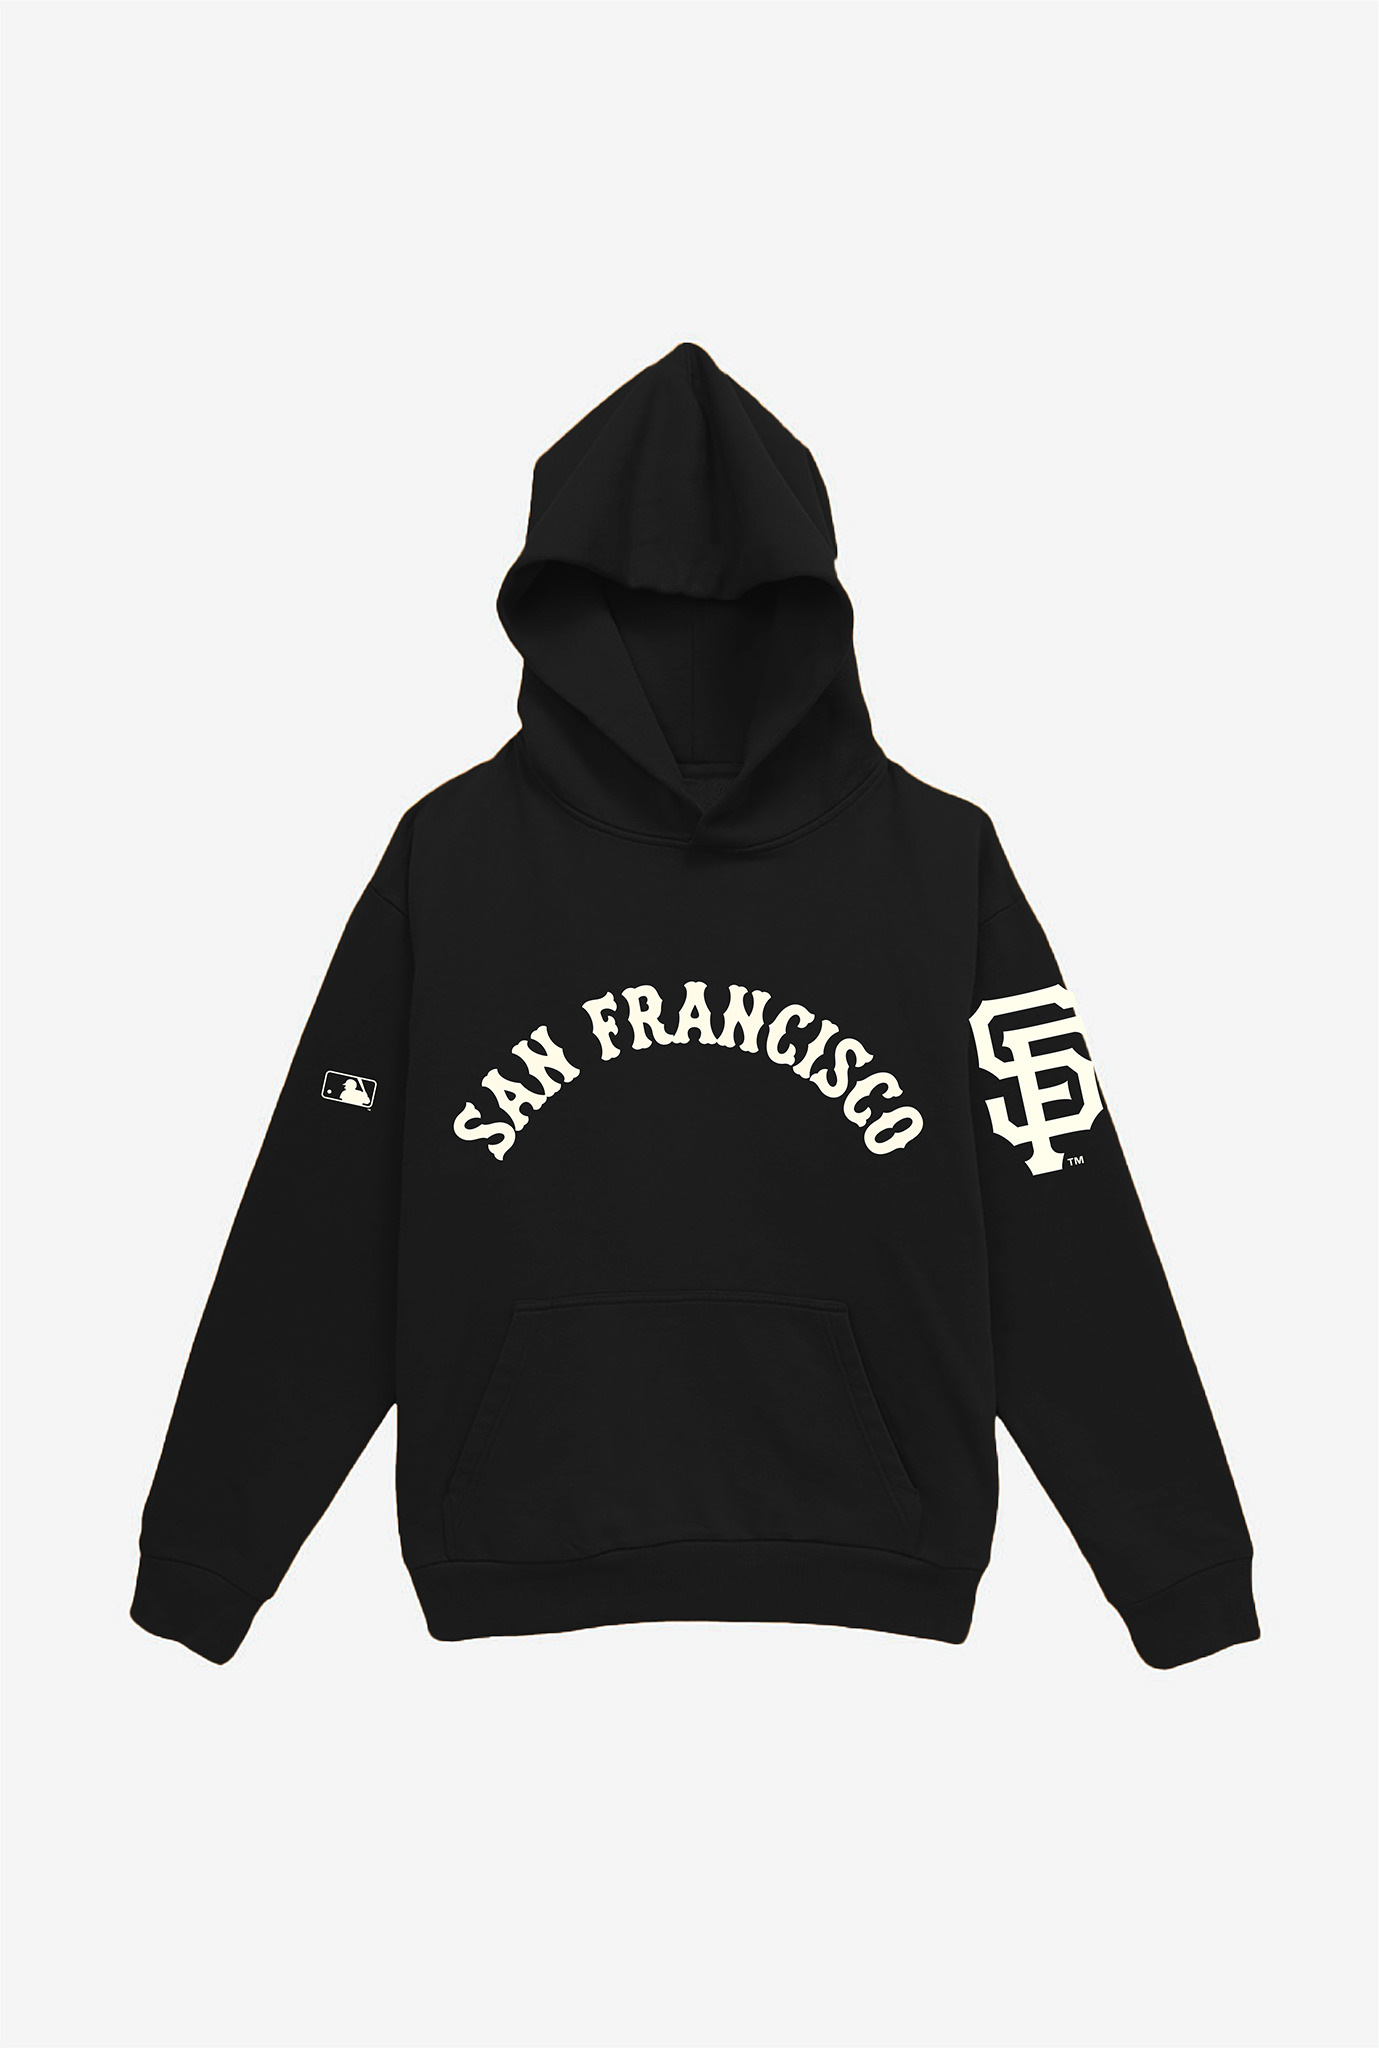 San Francisco Giants Essential Heavyweight Hoodie - Black